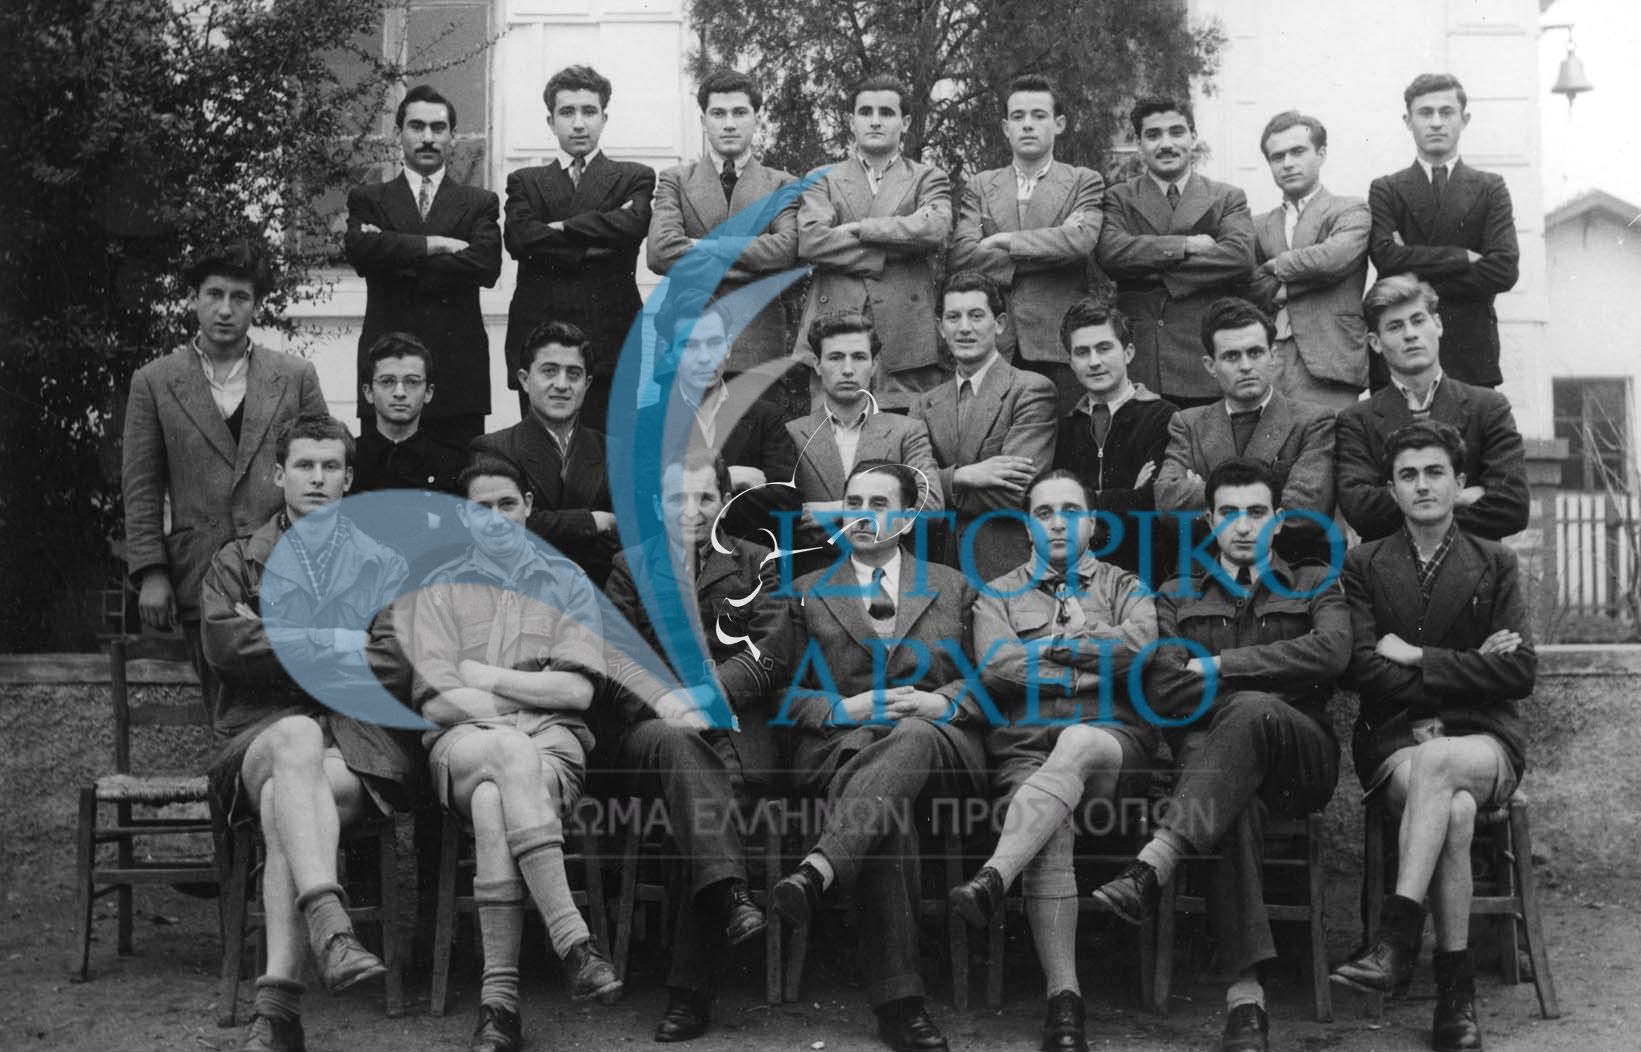 Ο έφορος Δ. Μακρίδης στην Σχολή προκαταρκτικής εκπαίδευσης Παιδαγωγικής Ακαδημίας Θεσσαλονίκης το 1949